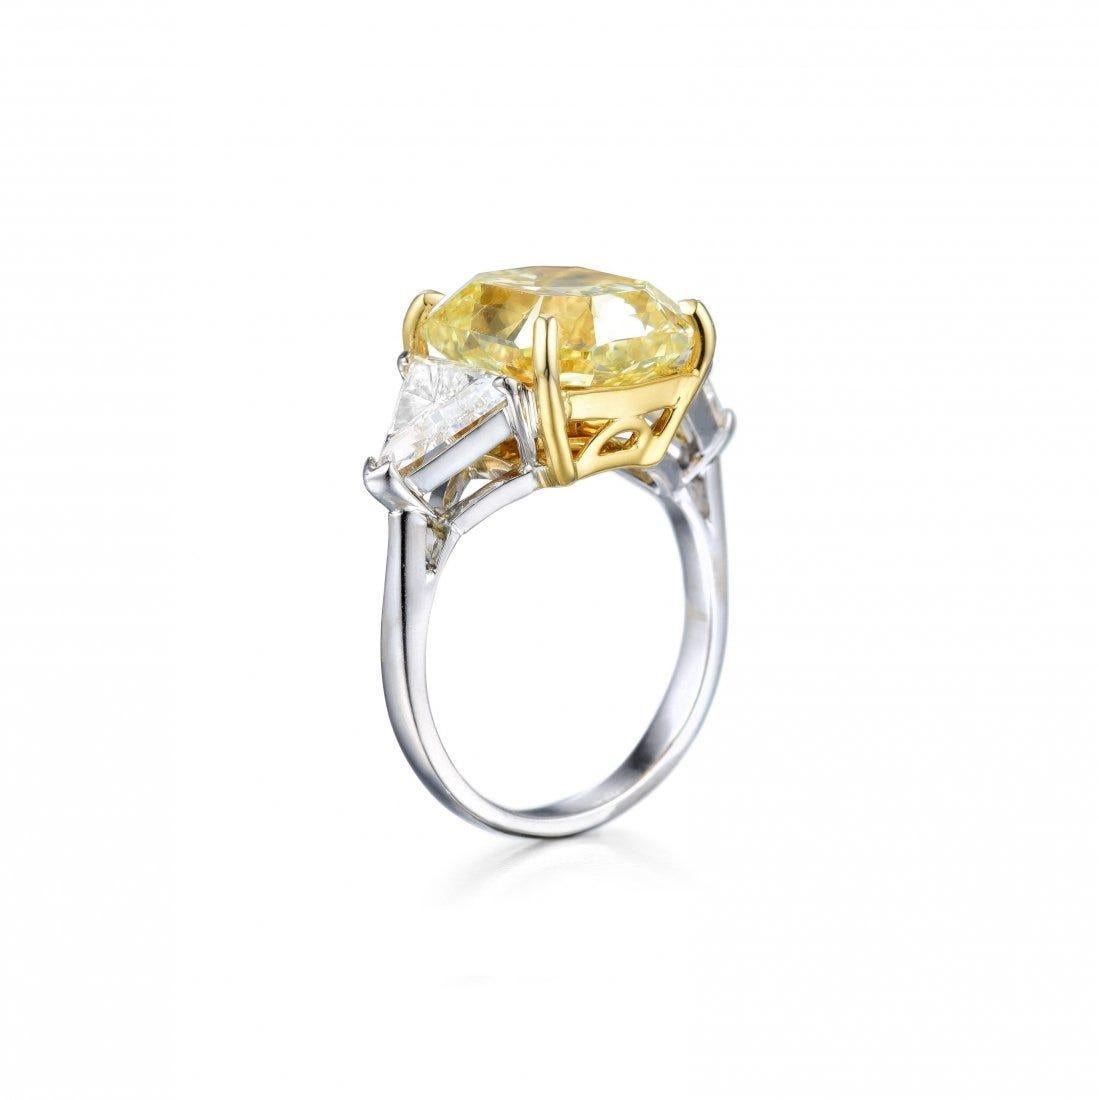 Bague à diamant coussin de 4 carats de couleur jaune fantaisie certifiée GIA, ornée d'exquis diamants trillion latéraux, le tout délicatement serti dans une combinaison de platine et d'or jaune 18 carats. Cette bague témoigne d'un savoir-faire et